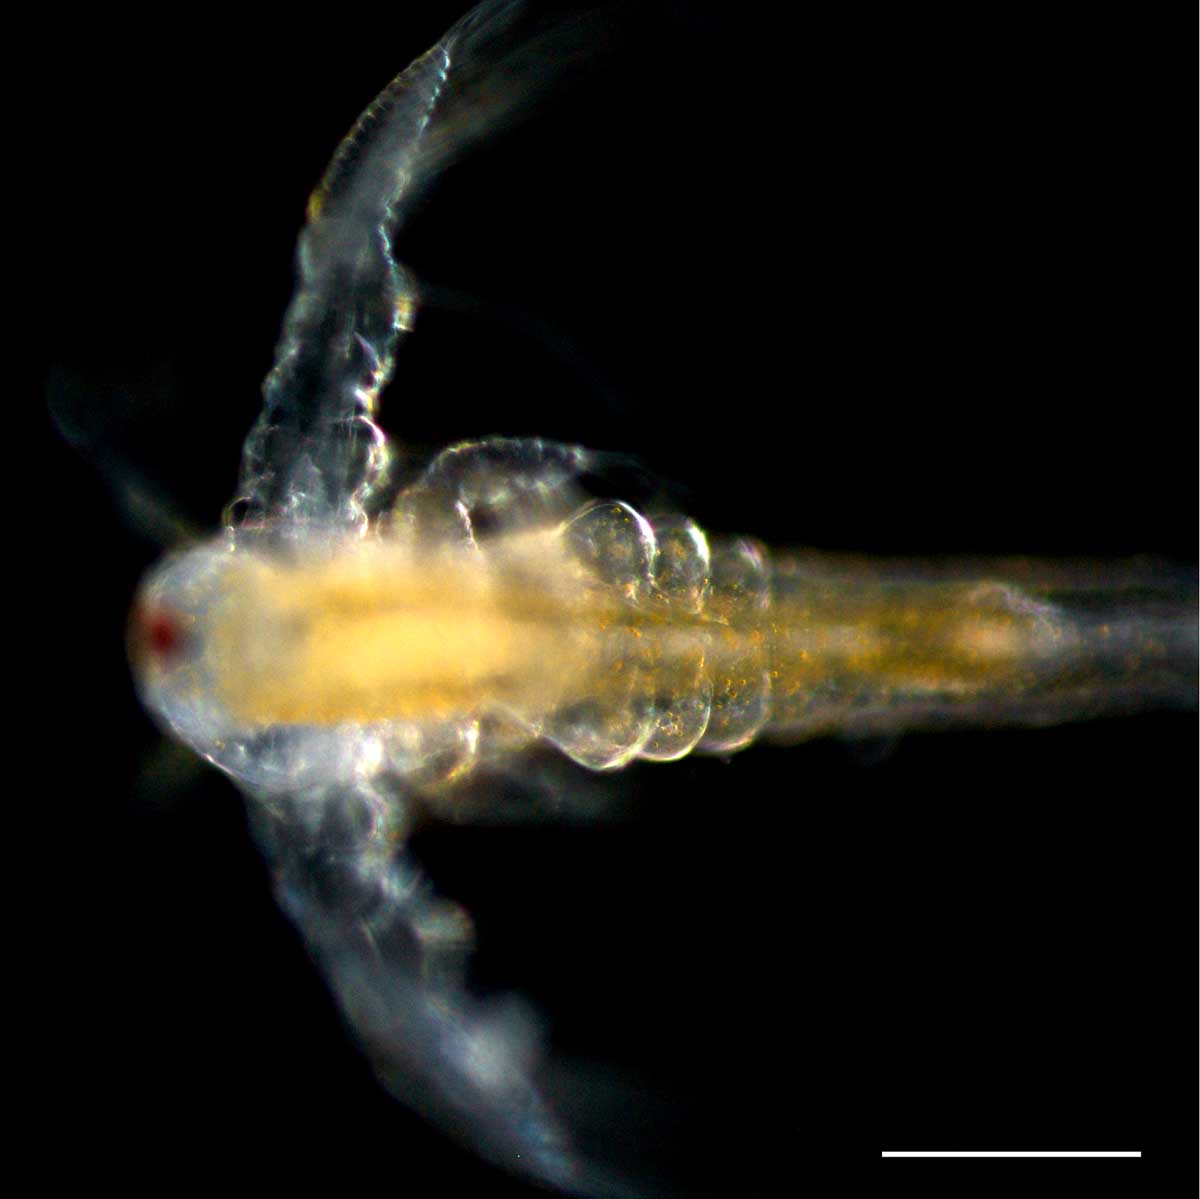 アルテミア (Artemia salina) の幼生3期の画像です。